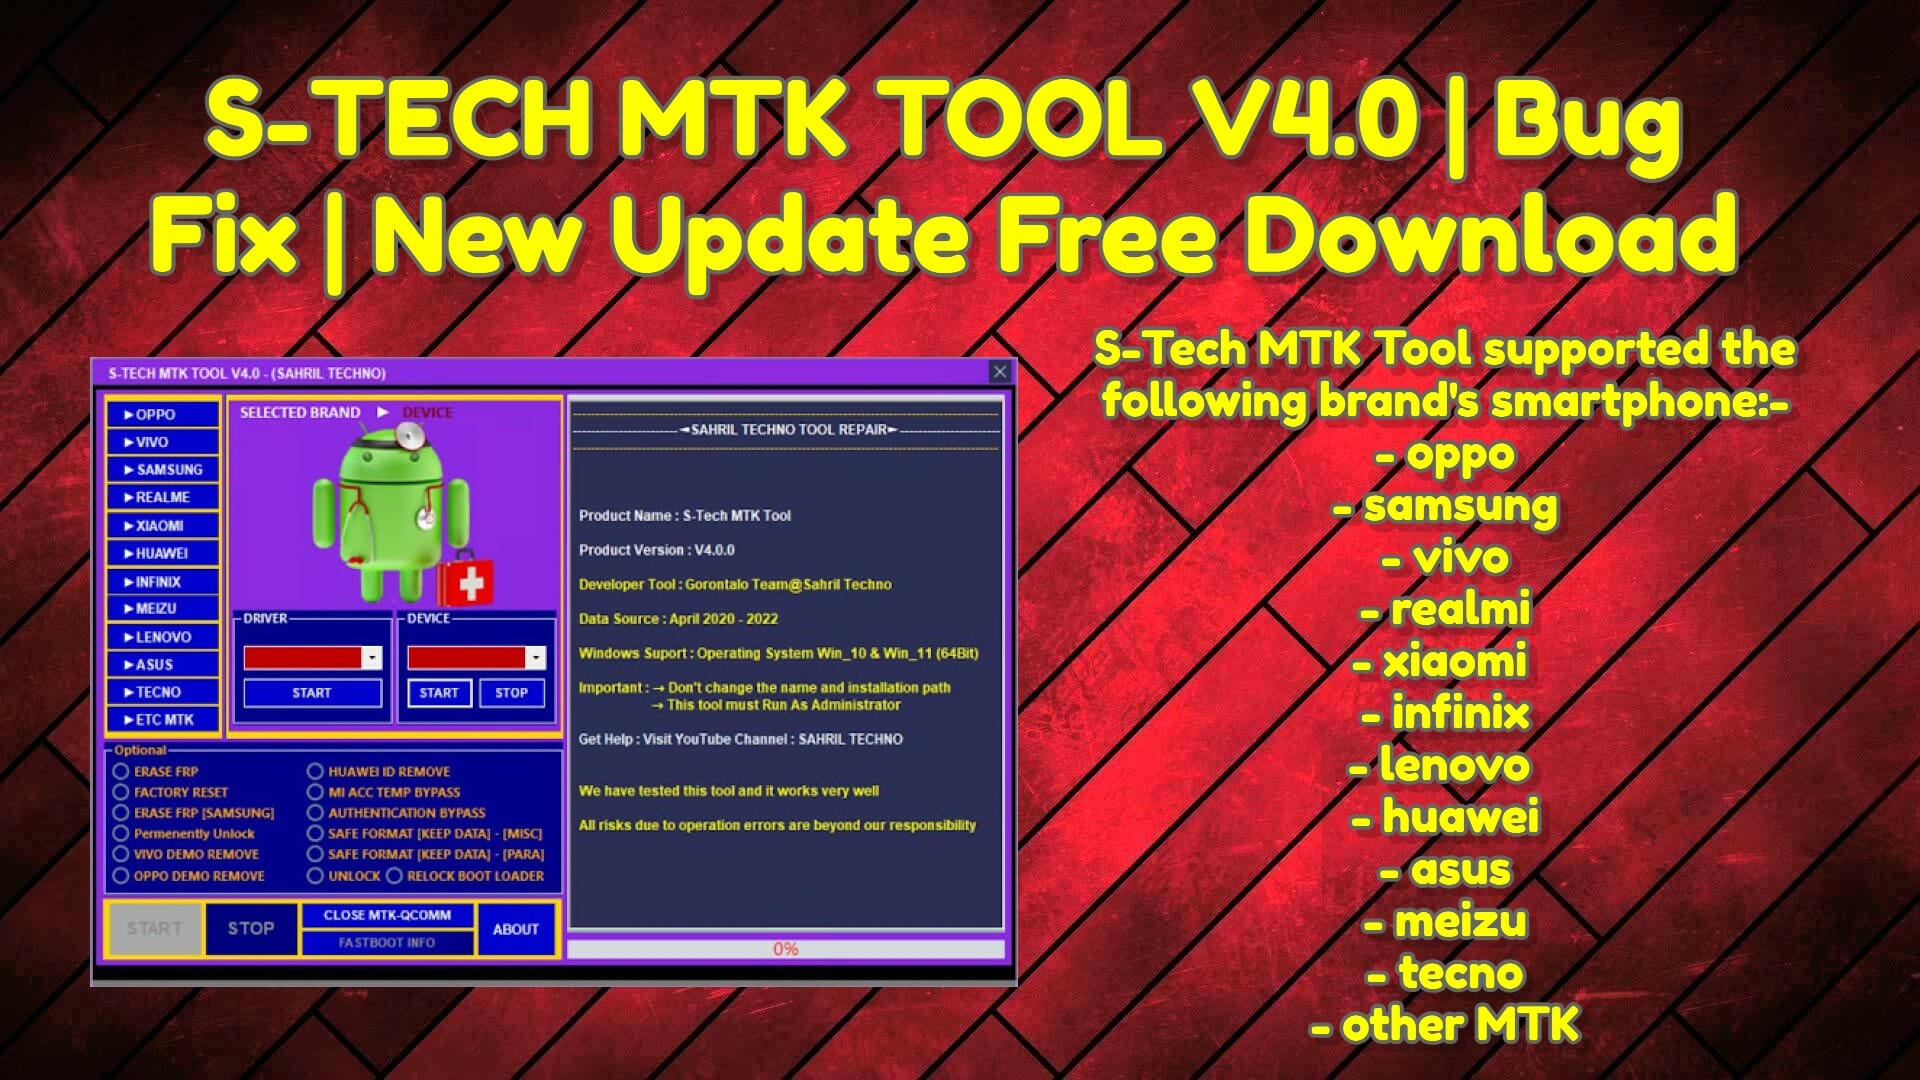 S-TECH MTK Tool V4.0